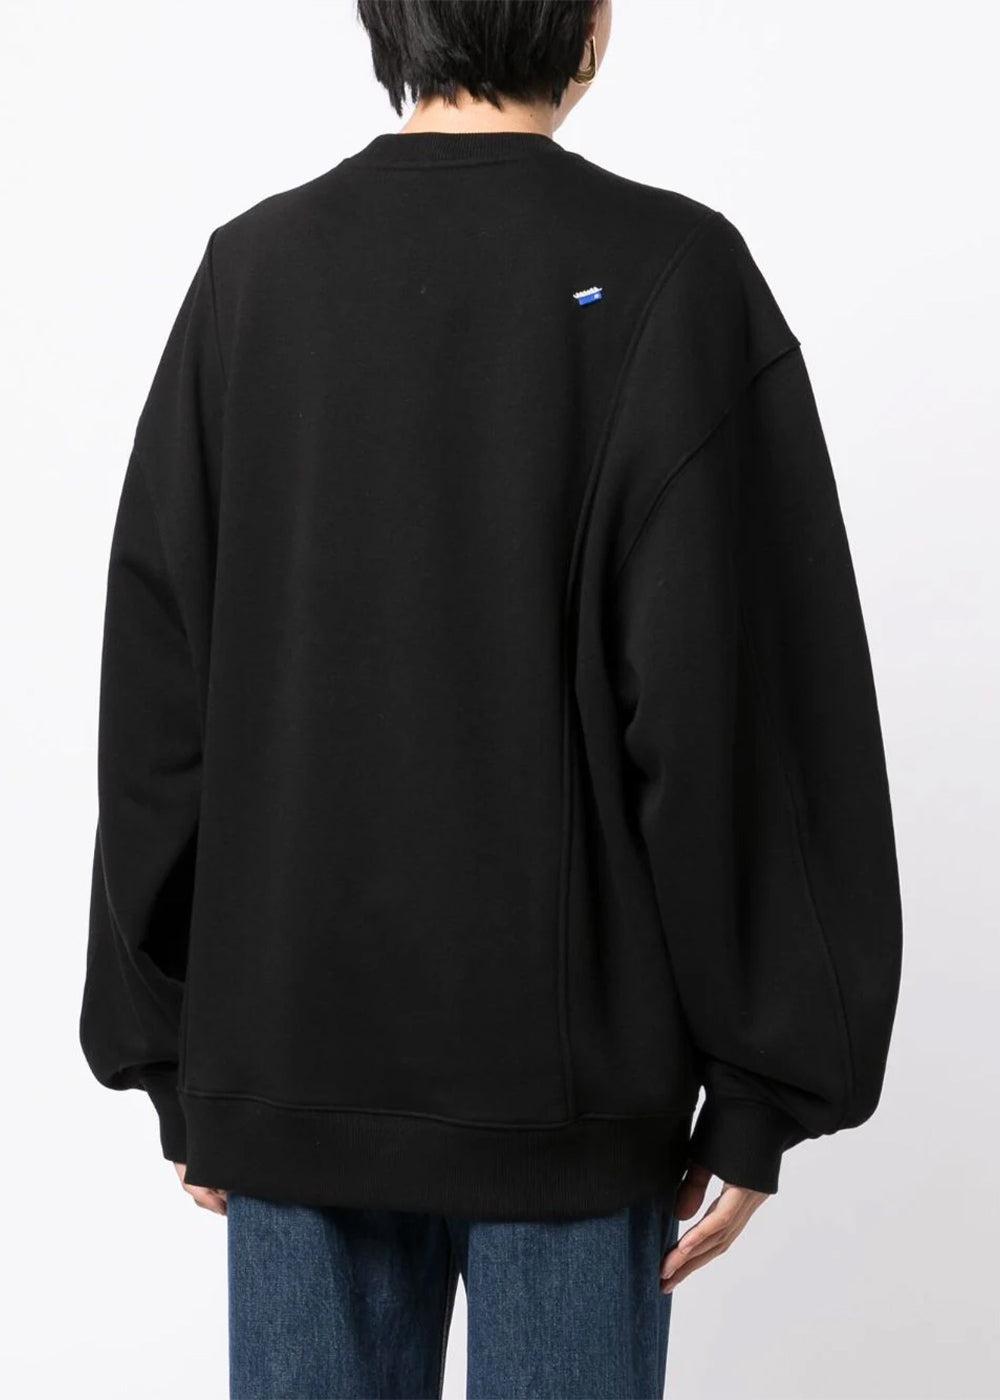 ADER error Logo-embroidered Sweatshirt in Black | Lyst